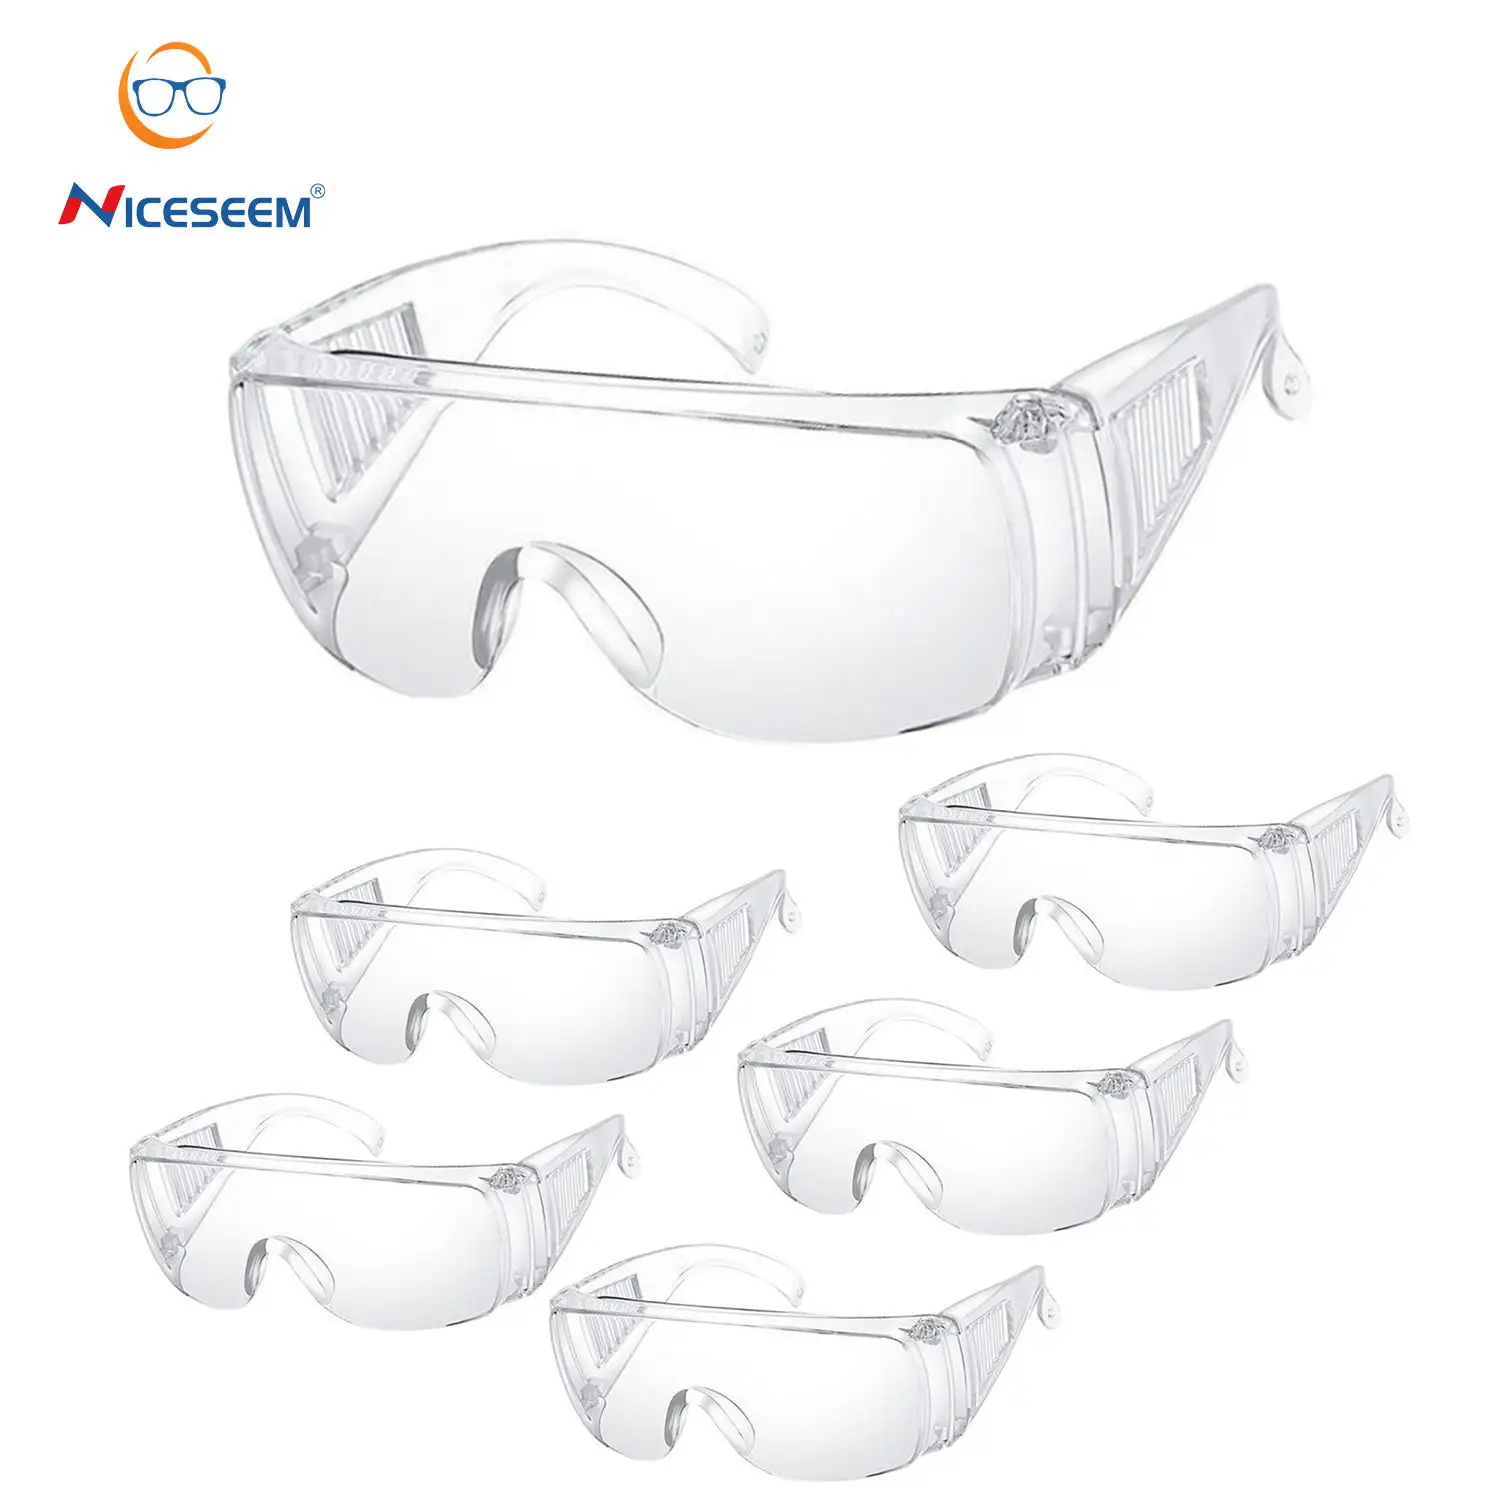 Kacamata ANSI lensa bekerja, kacamata pelindung mata Anti kabut perlindungan keselamatan konstruksi mata industri